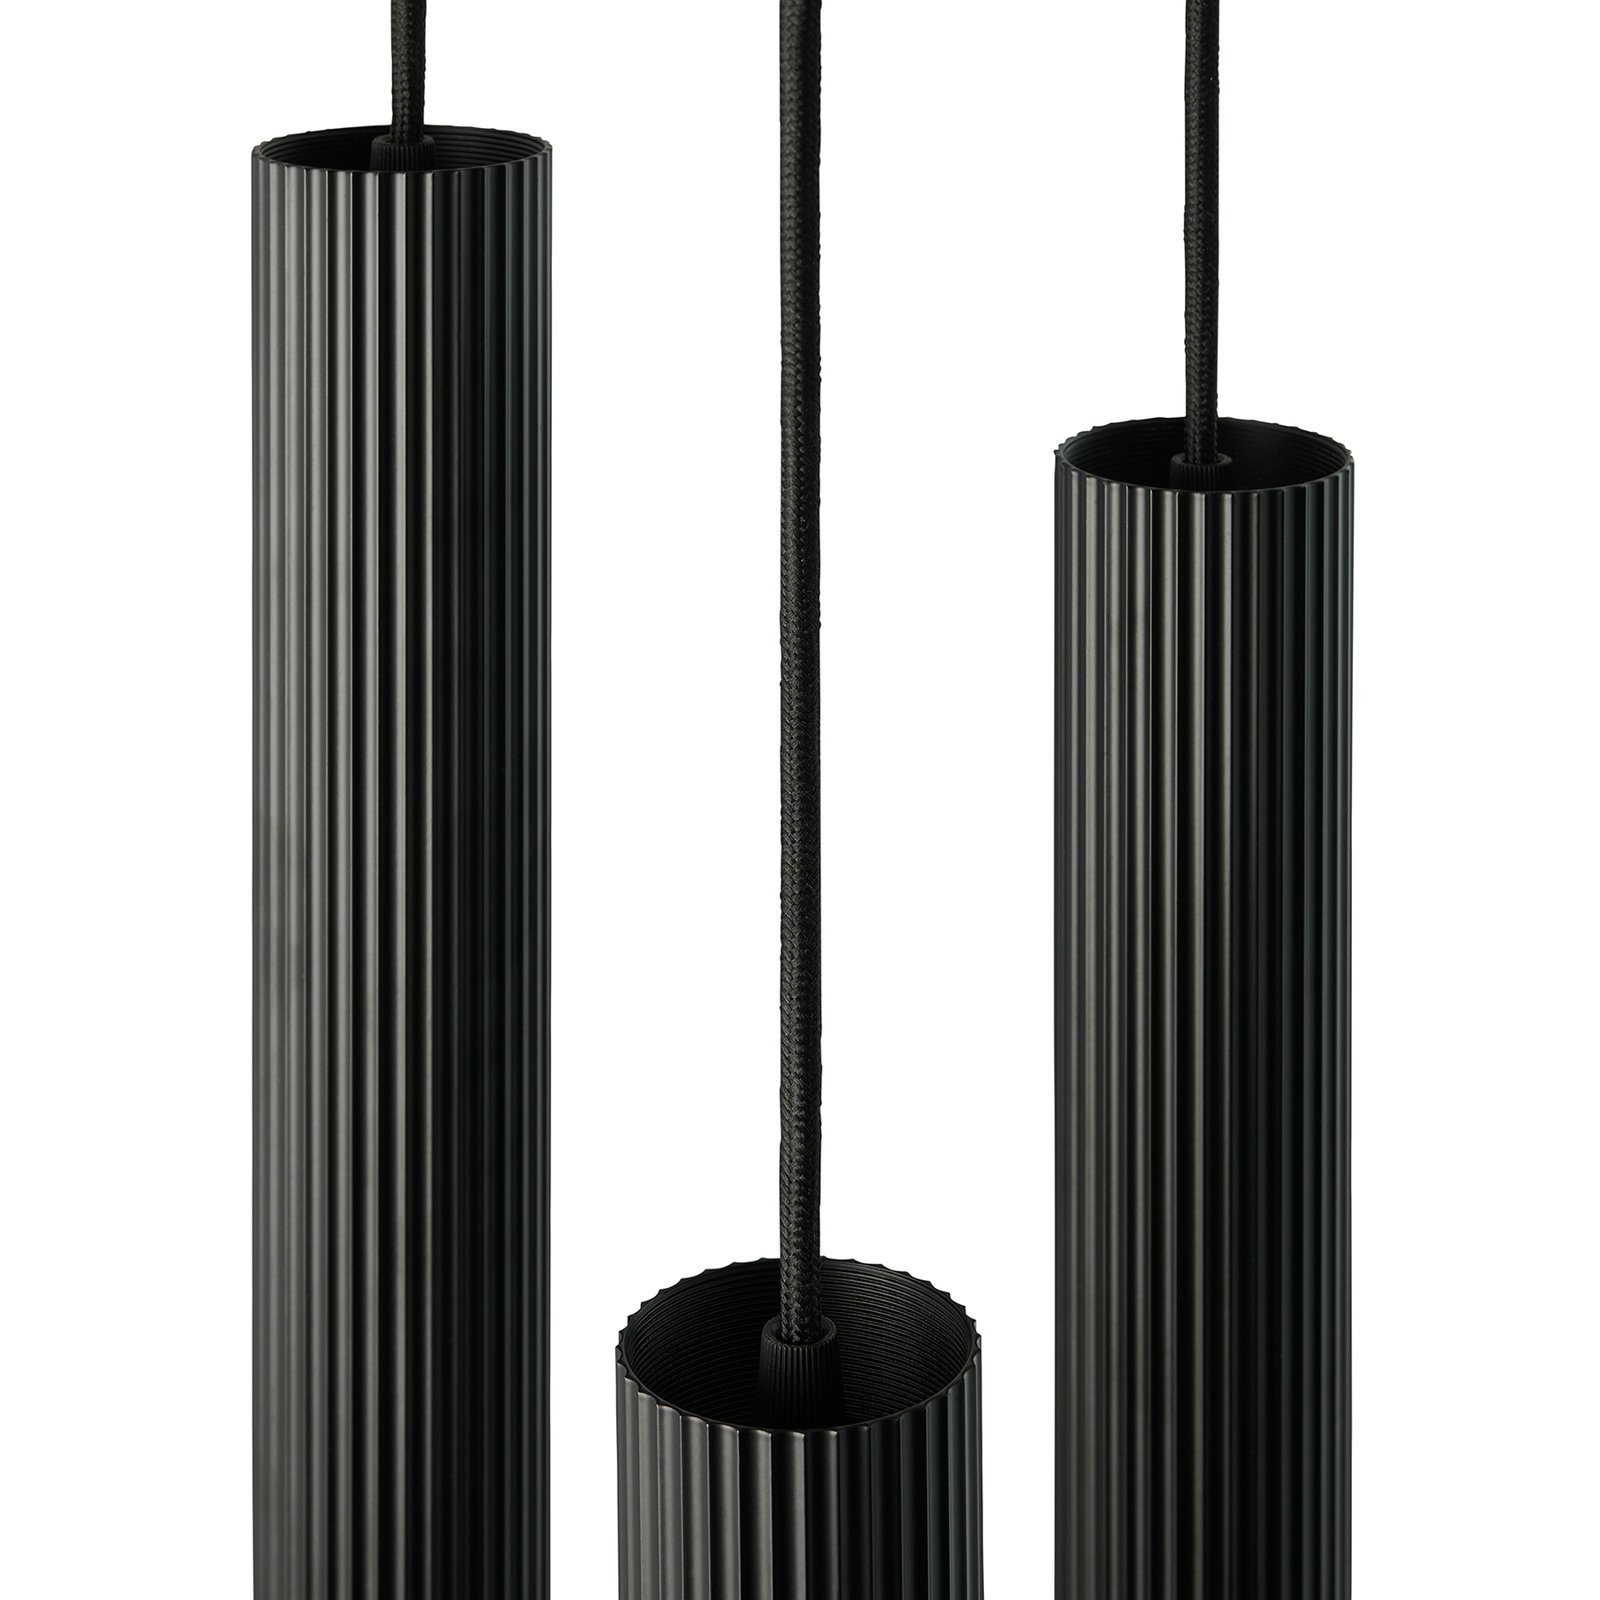 Vico hanglamp, 3-lamps, rondel, metaal, zwart